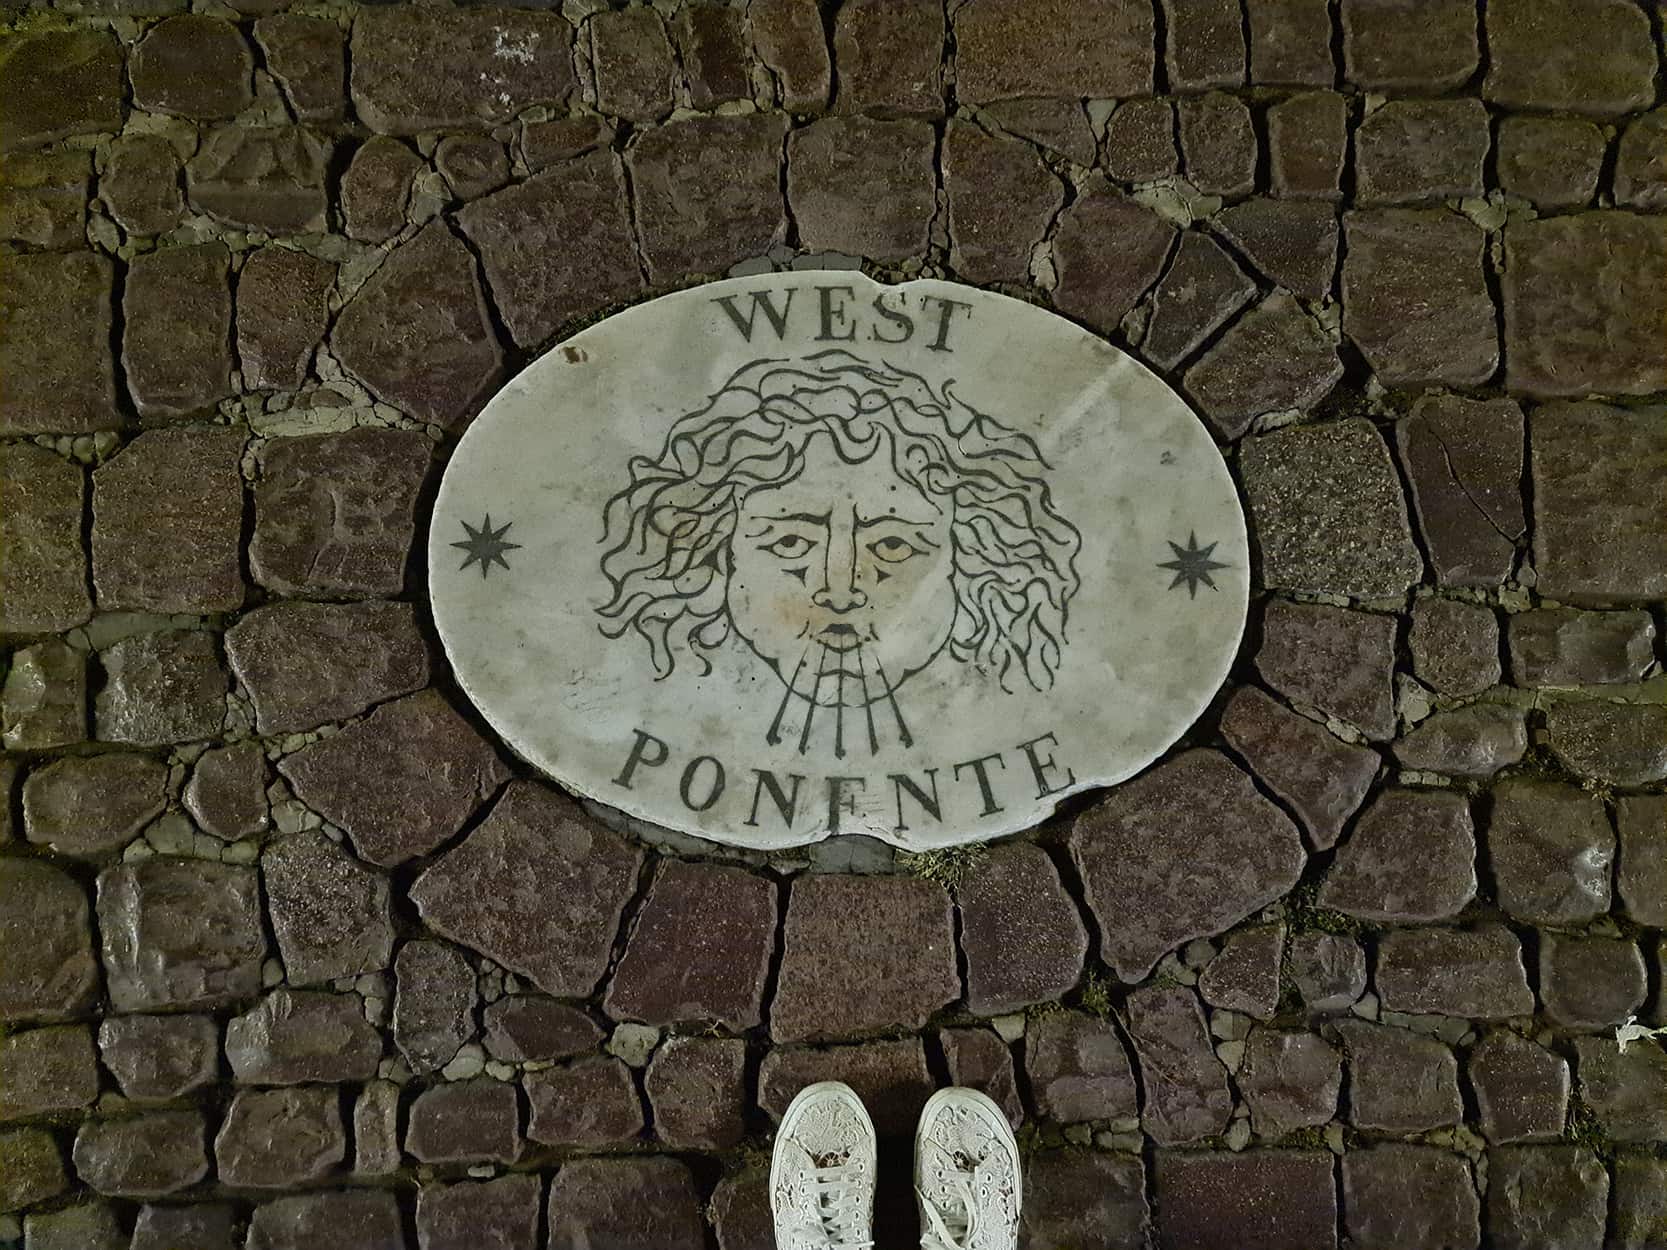 Uno dei bassorilievi presenti in piazza San Pietro, ovvero una piastrella sul pavimento di san pietrini, raffigurante un angelo che soffia. Sul bassorilievo c'è scritto west ponente.